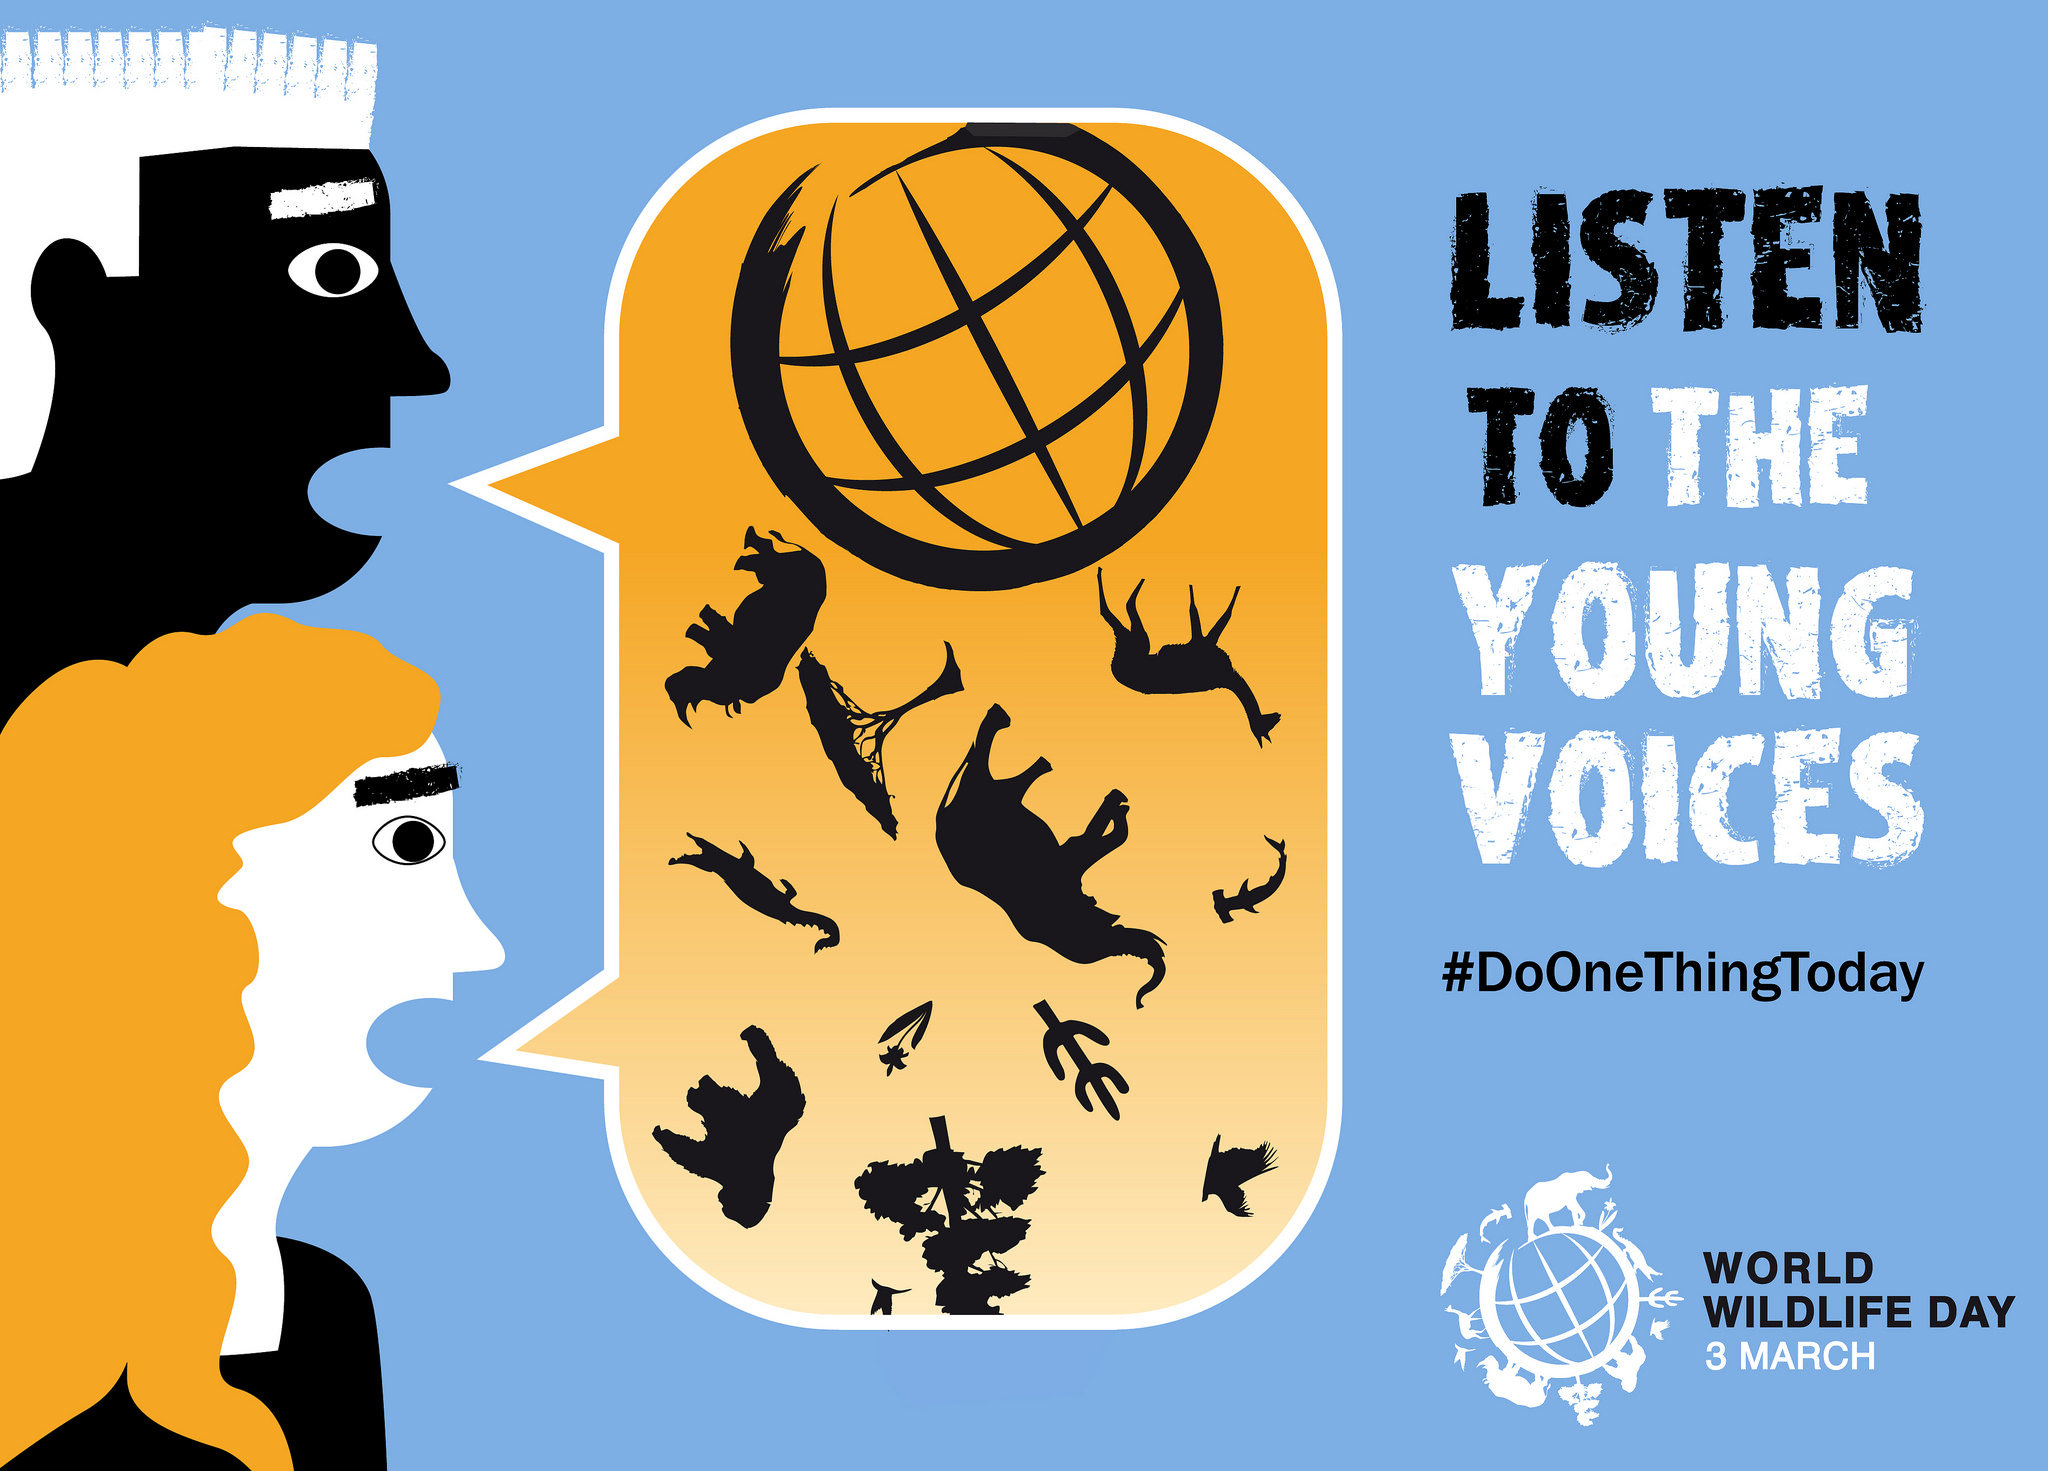 3 Μαρτίου, Παγκόσμια Ημέρα Άγριας Ζωής: «Ακούστε τις φωνές της νεολαίας» και αλλάξτε πρότυπα κατακτητικής συμπεριφοράς προς τη φύση